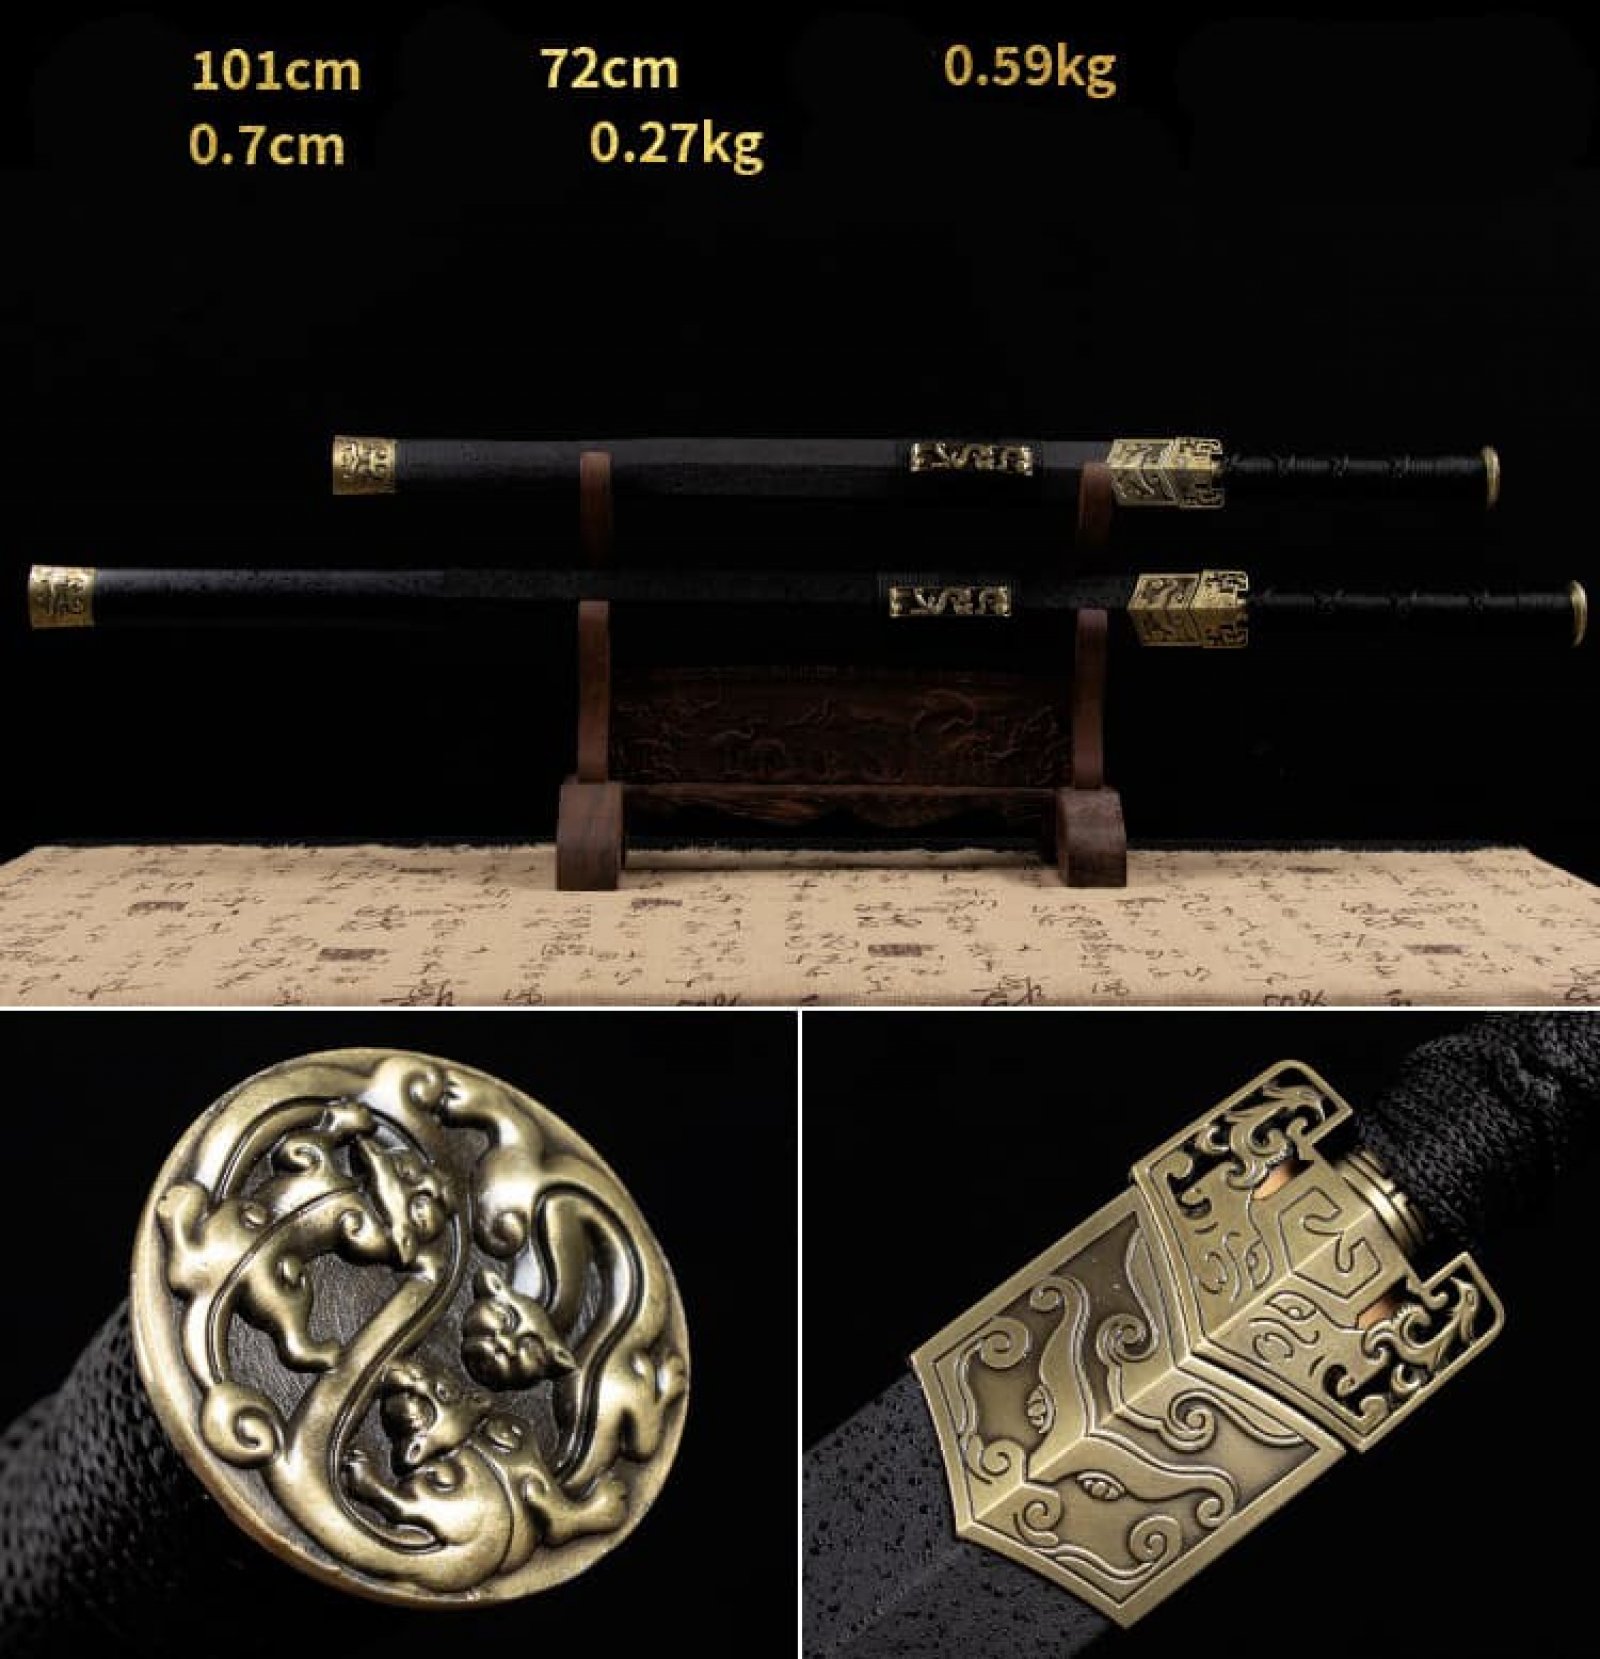 Kiếm gỗ samurai Nhật Bản vỏ kiếm chạm khắc rồng có tsuba 018